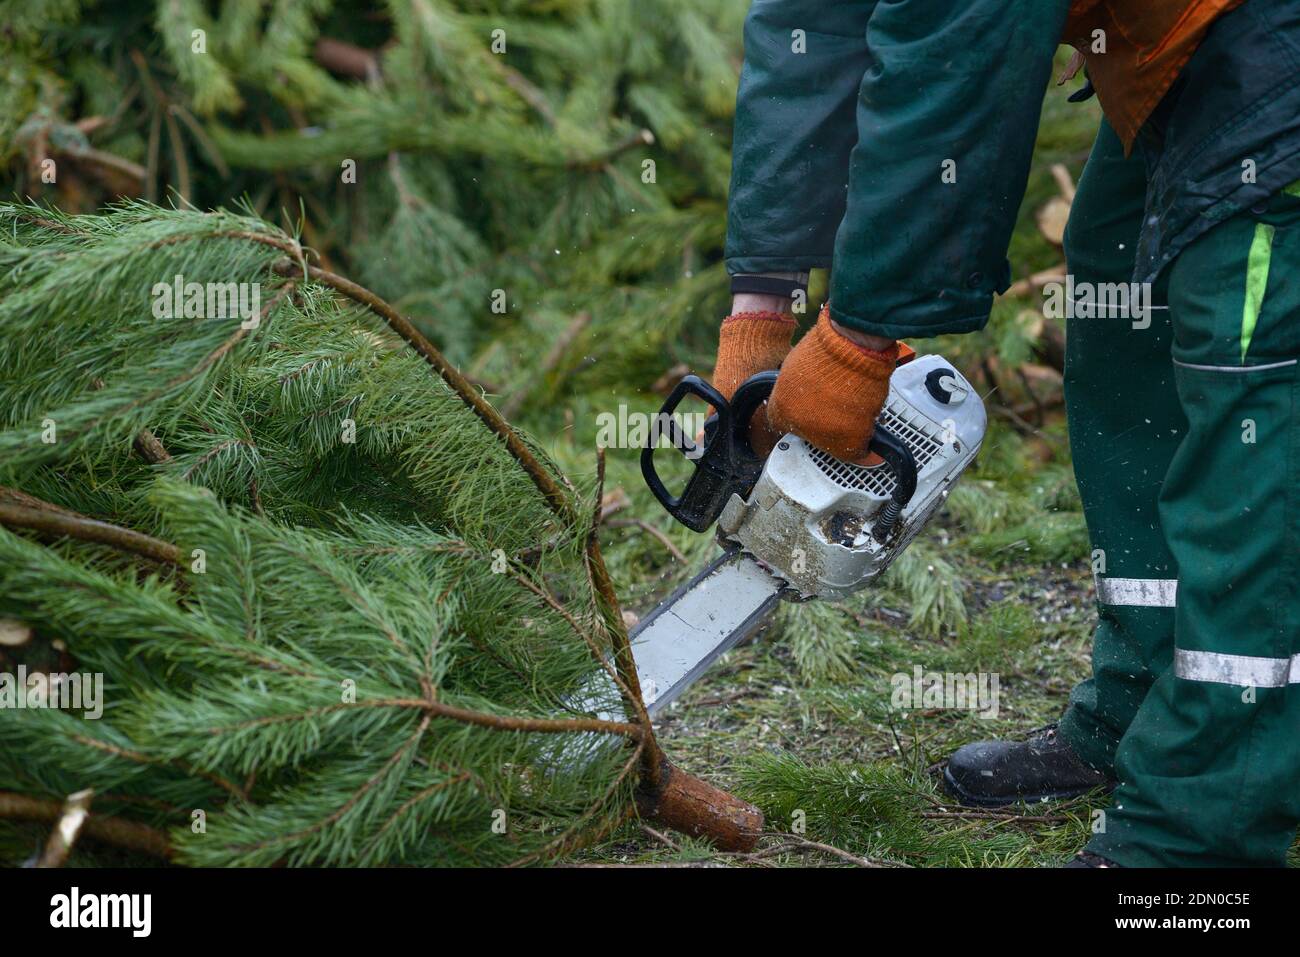 Les mains de bûcherons coupant des branches de pins, utilisé arbre de Noël, avec la tronçonneuse pour le recyclage. Point de collecte pour le recyclage des arbres de Noël usagés Banque D'Images